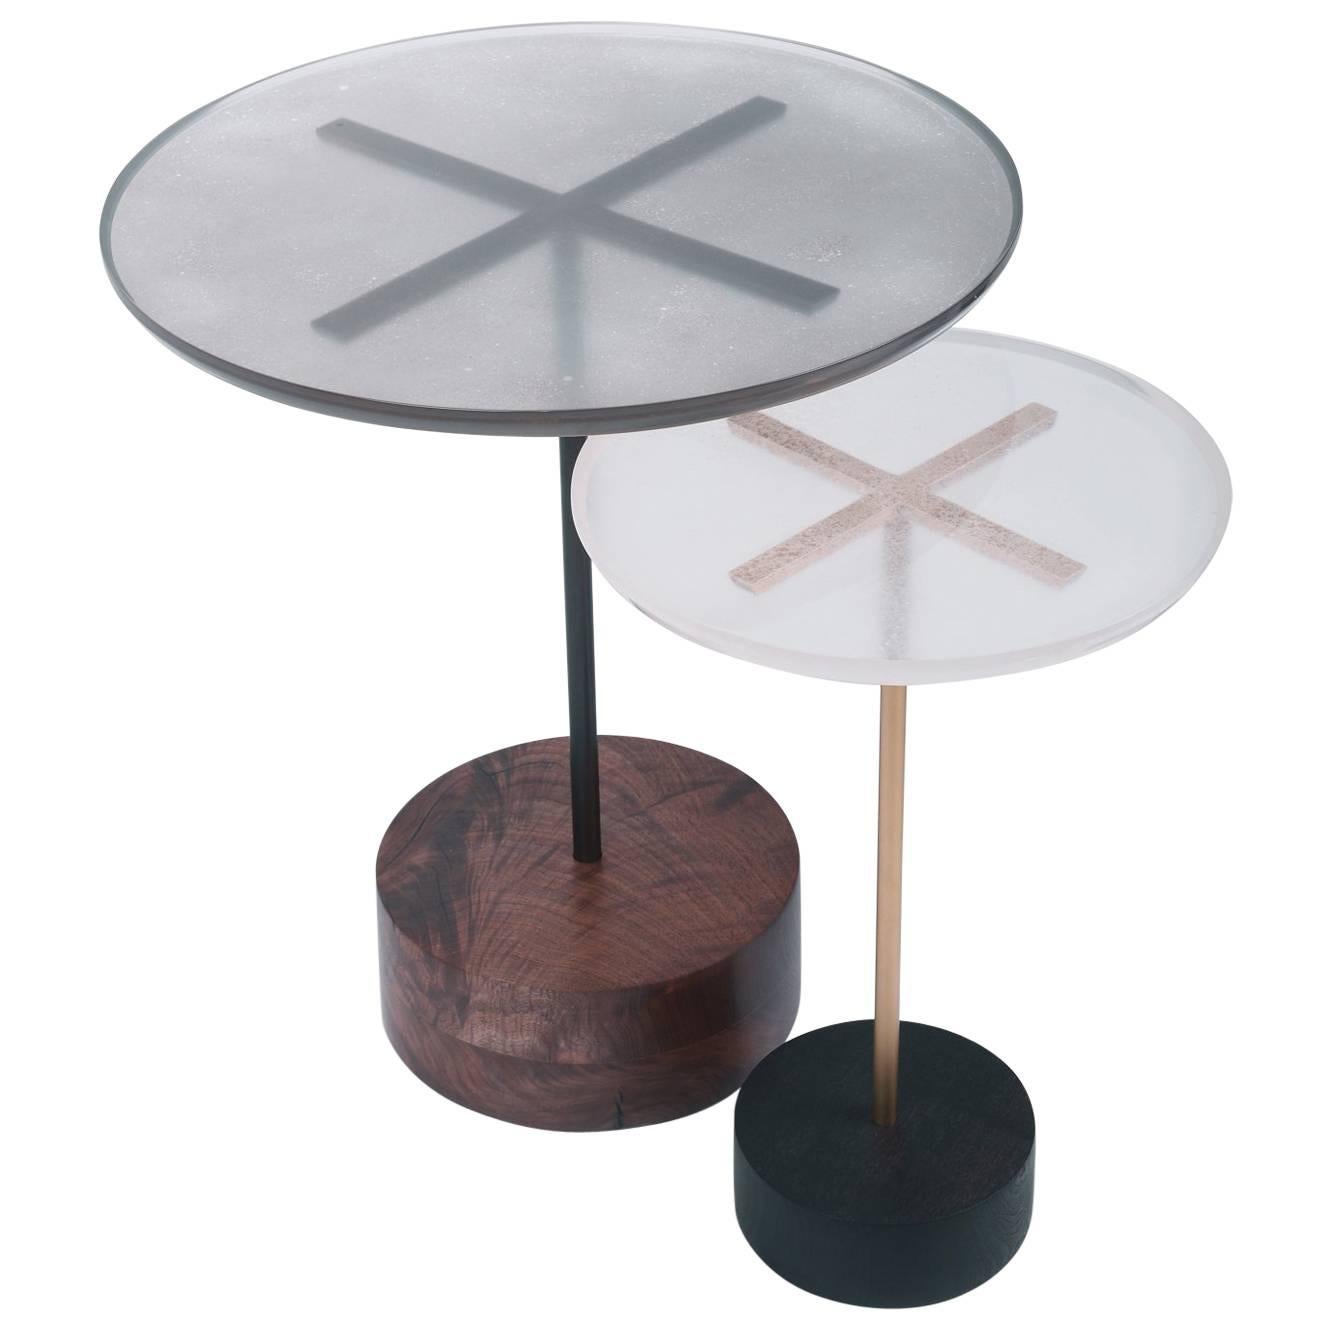 Tables d'extrémité Stella, bois, métal, résine et poudre métallique personnalisables